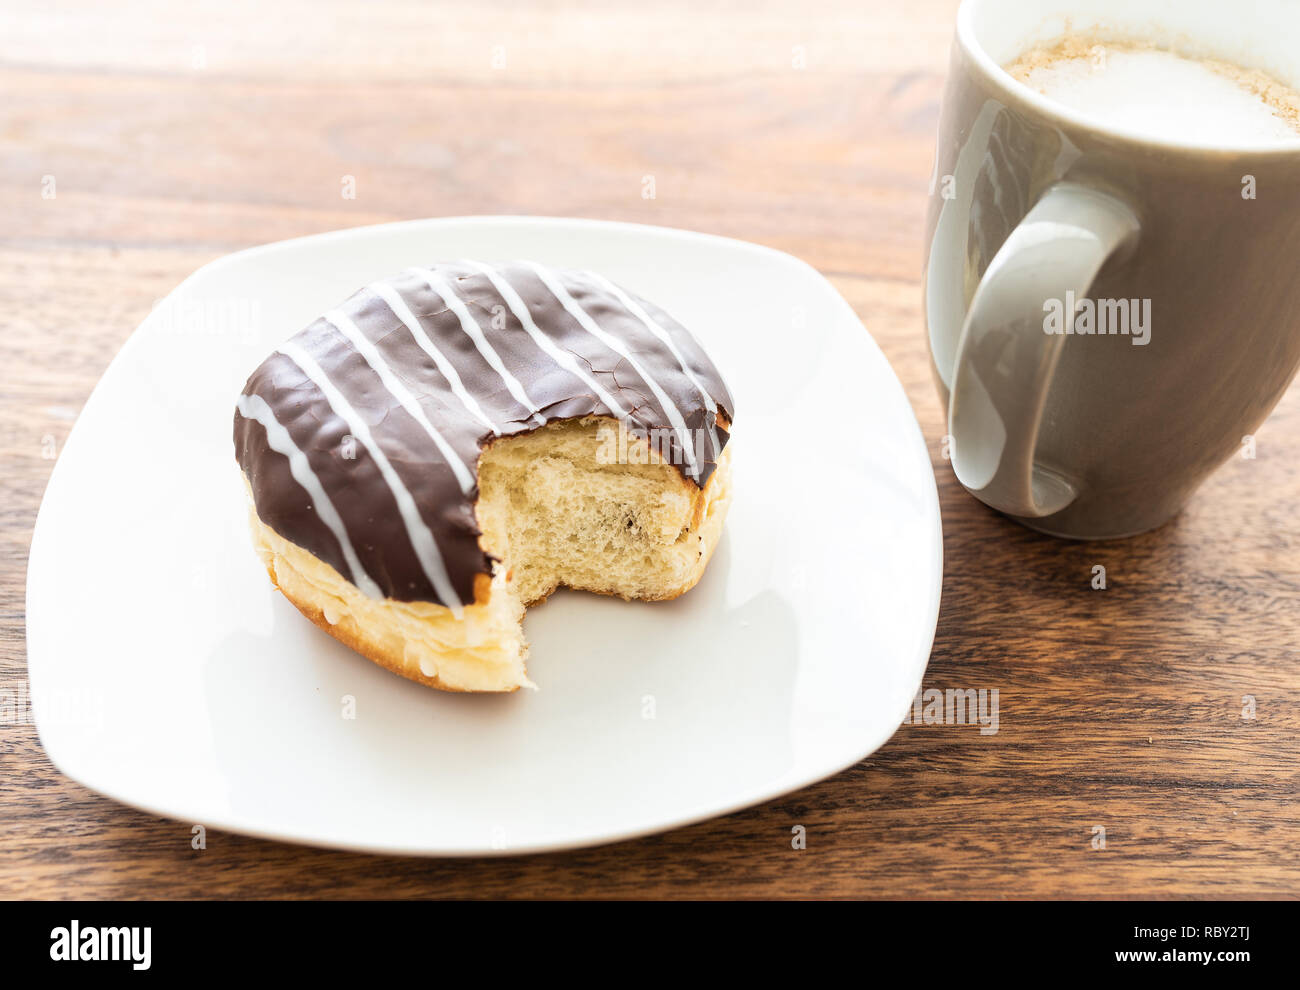 Portrait de chocolats jelly donut on wooden table Banque D'Images